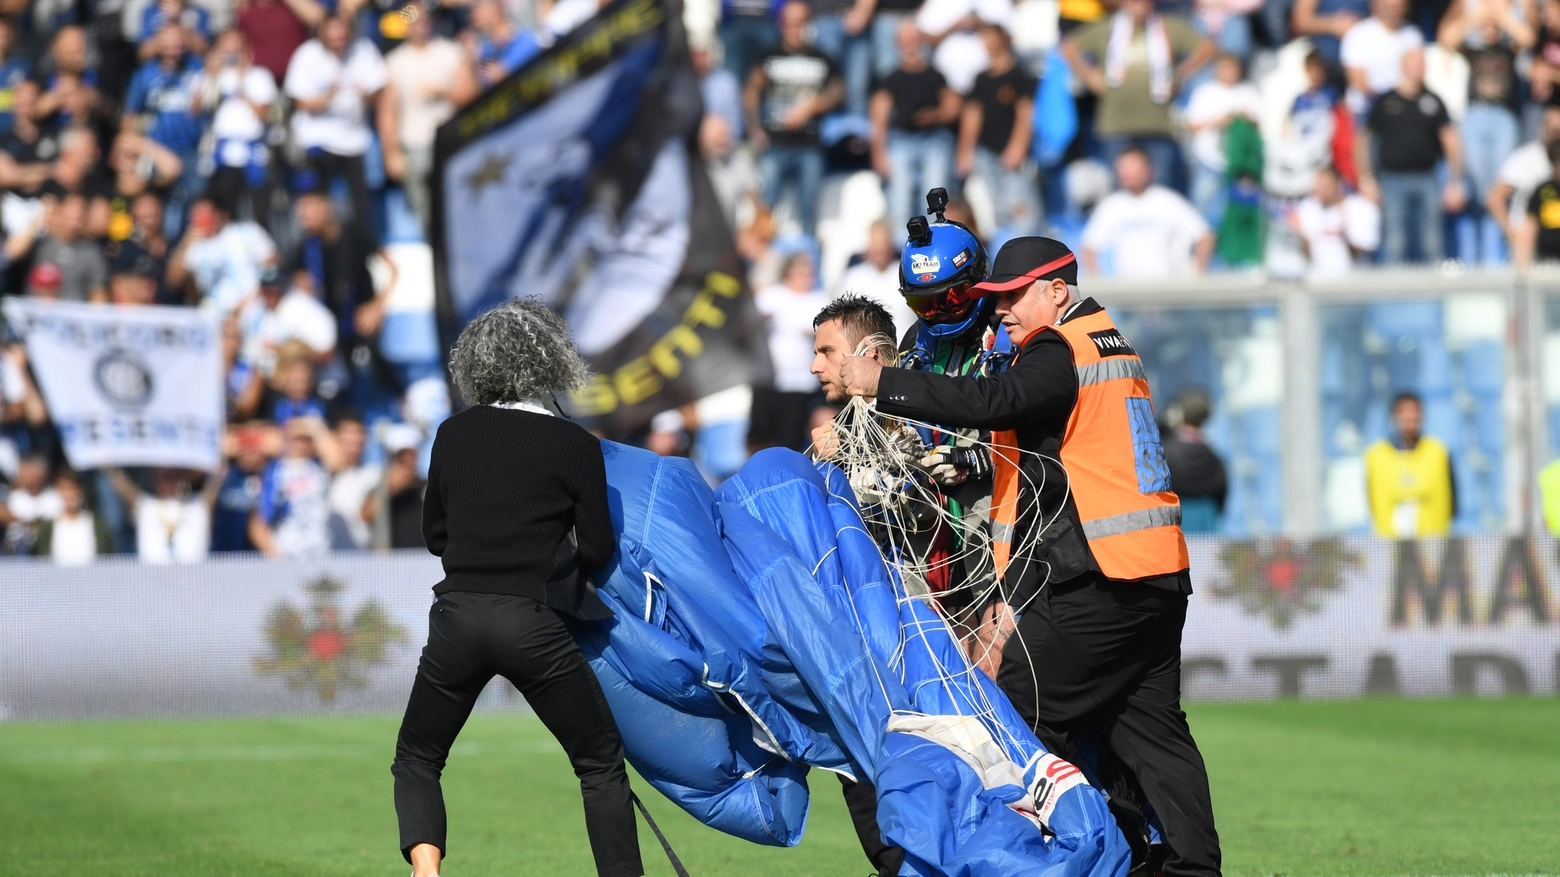 Il paracadutista che è atterrato in campo durante il match (foto Fiocchi)